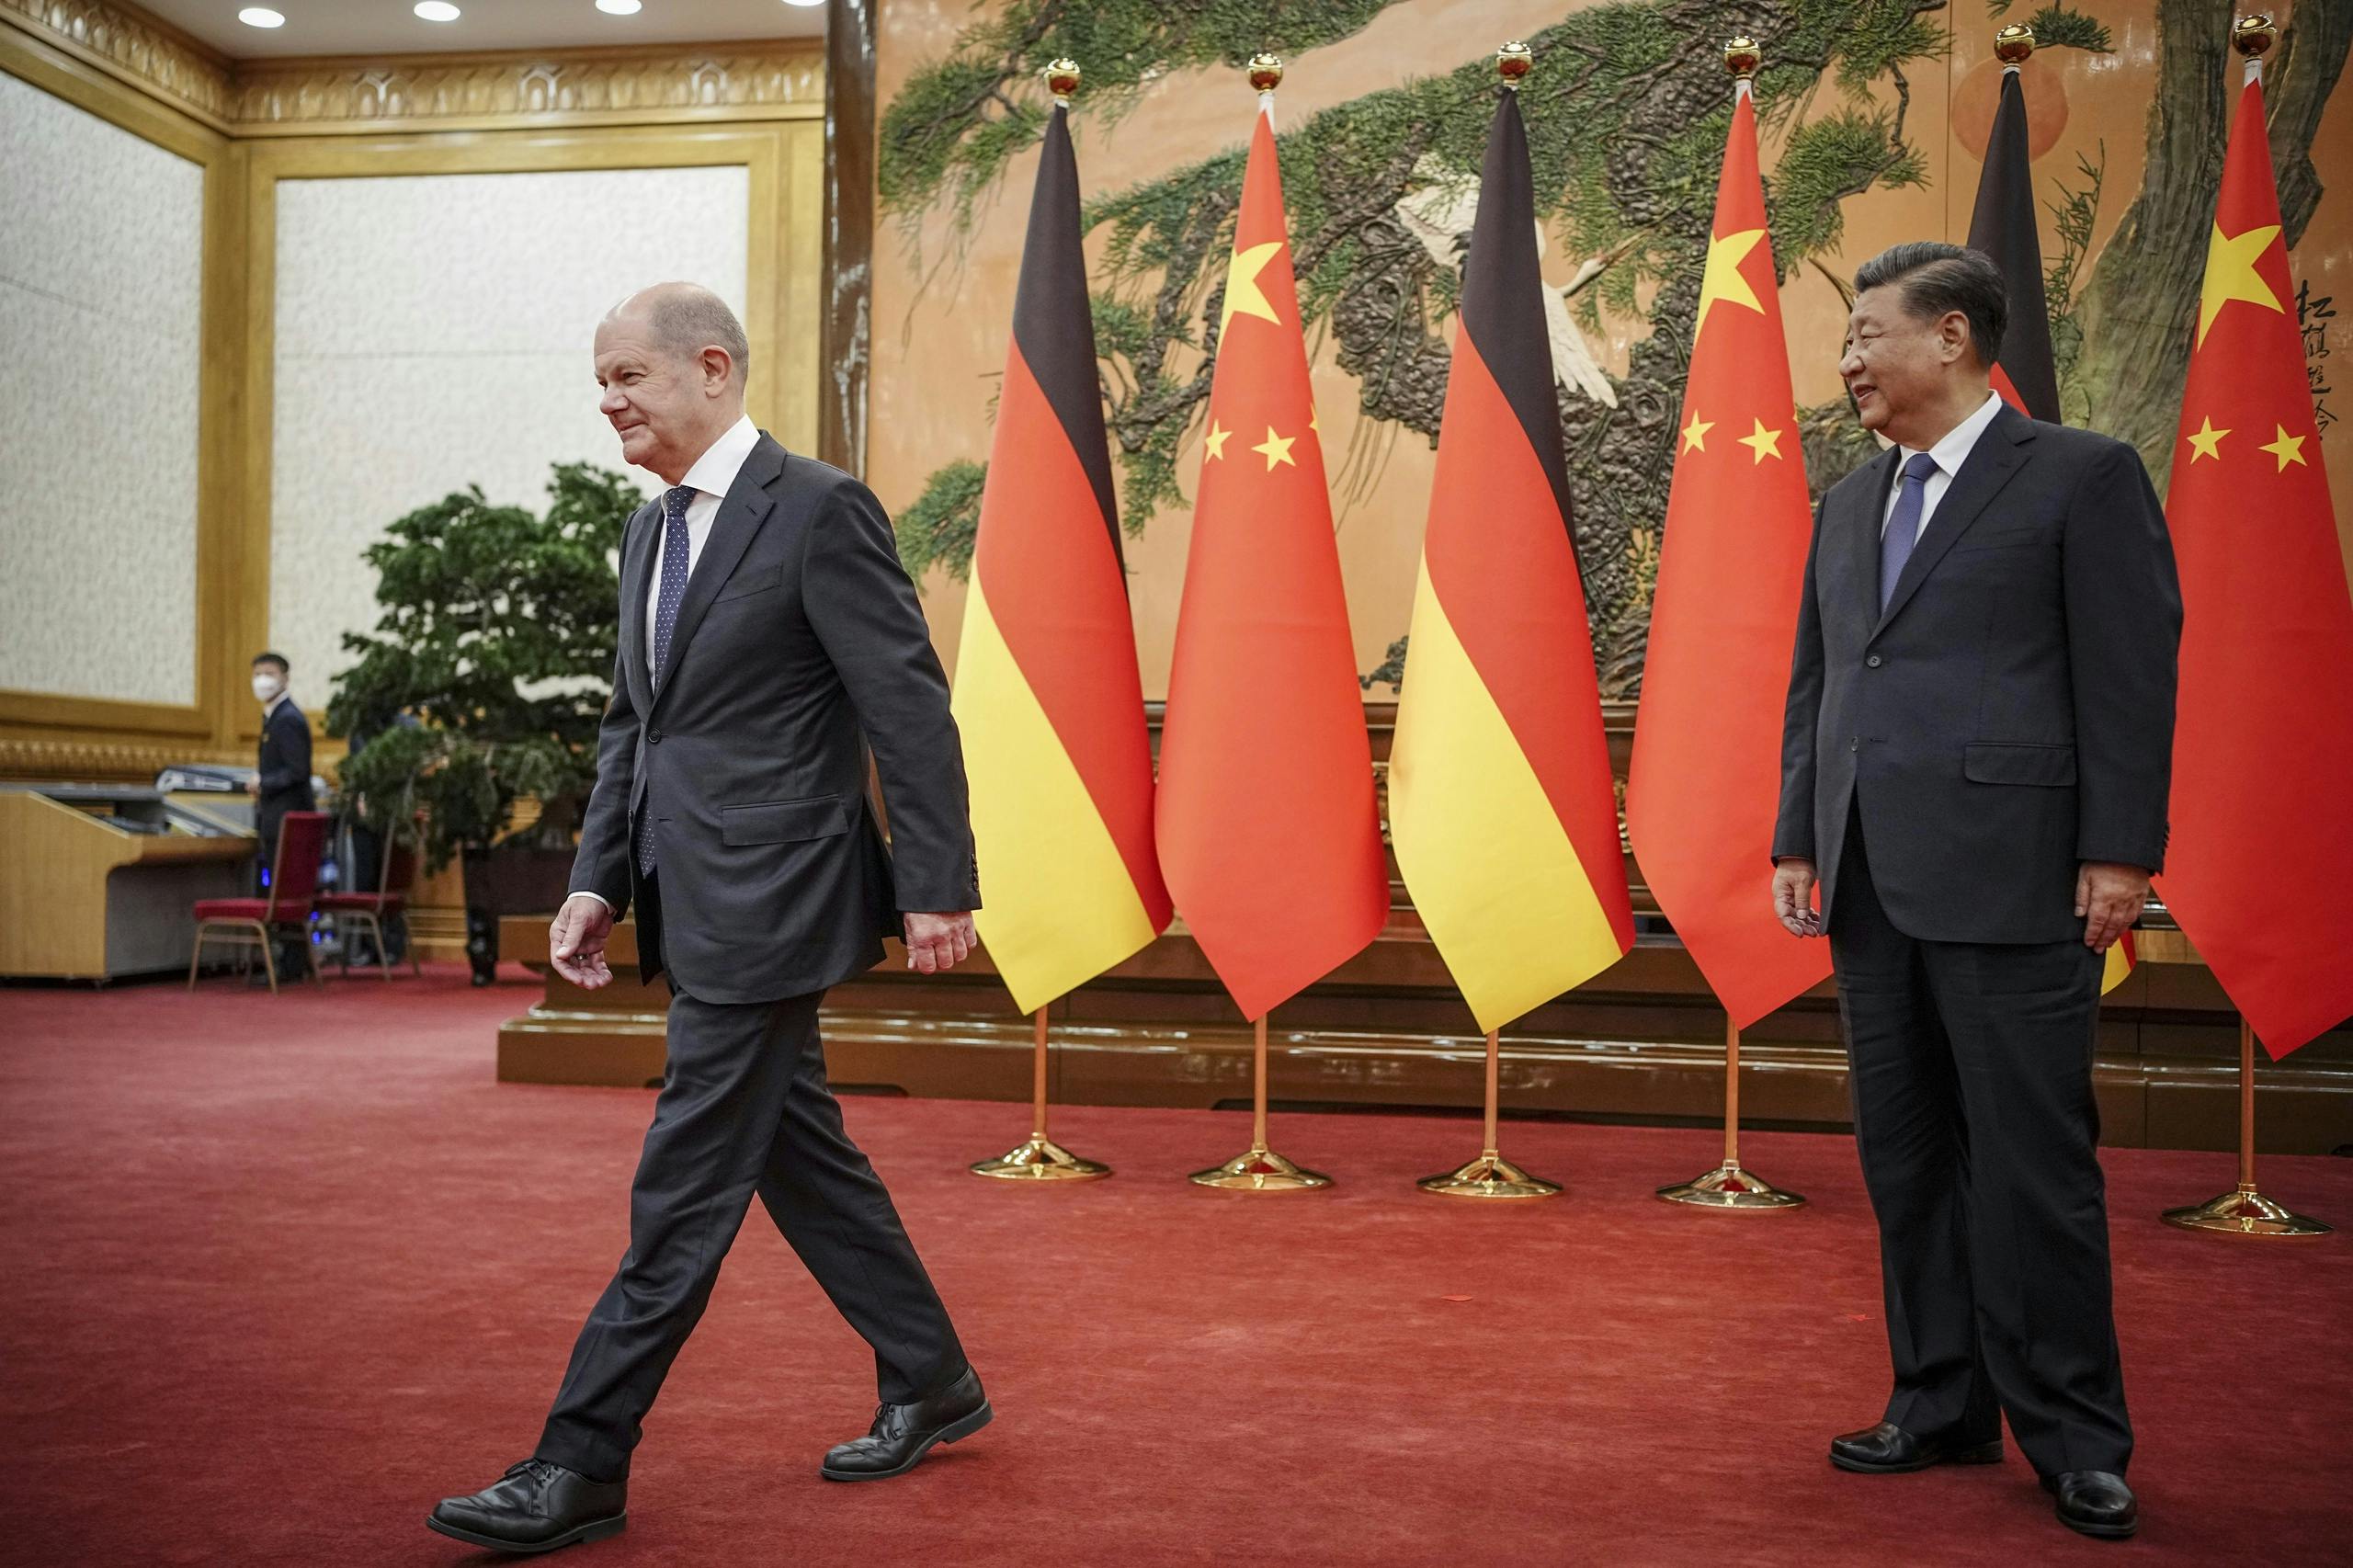 „Deutschland will strengere Regeln für den Handel mit China“